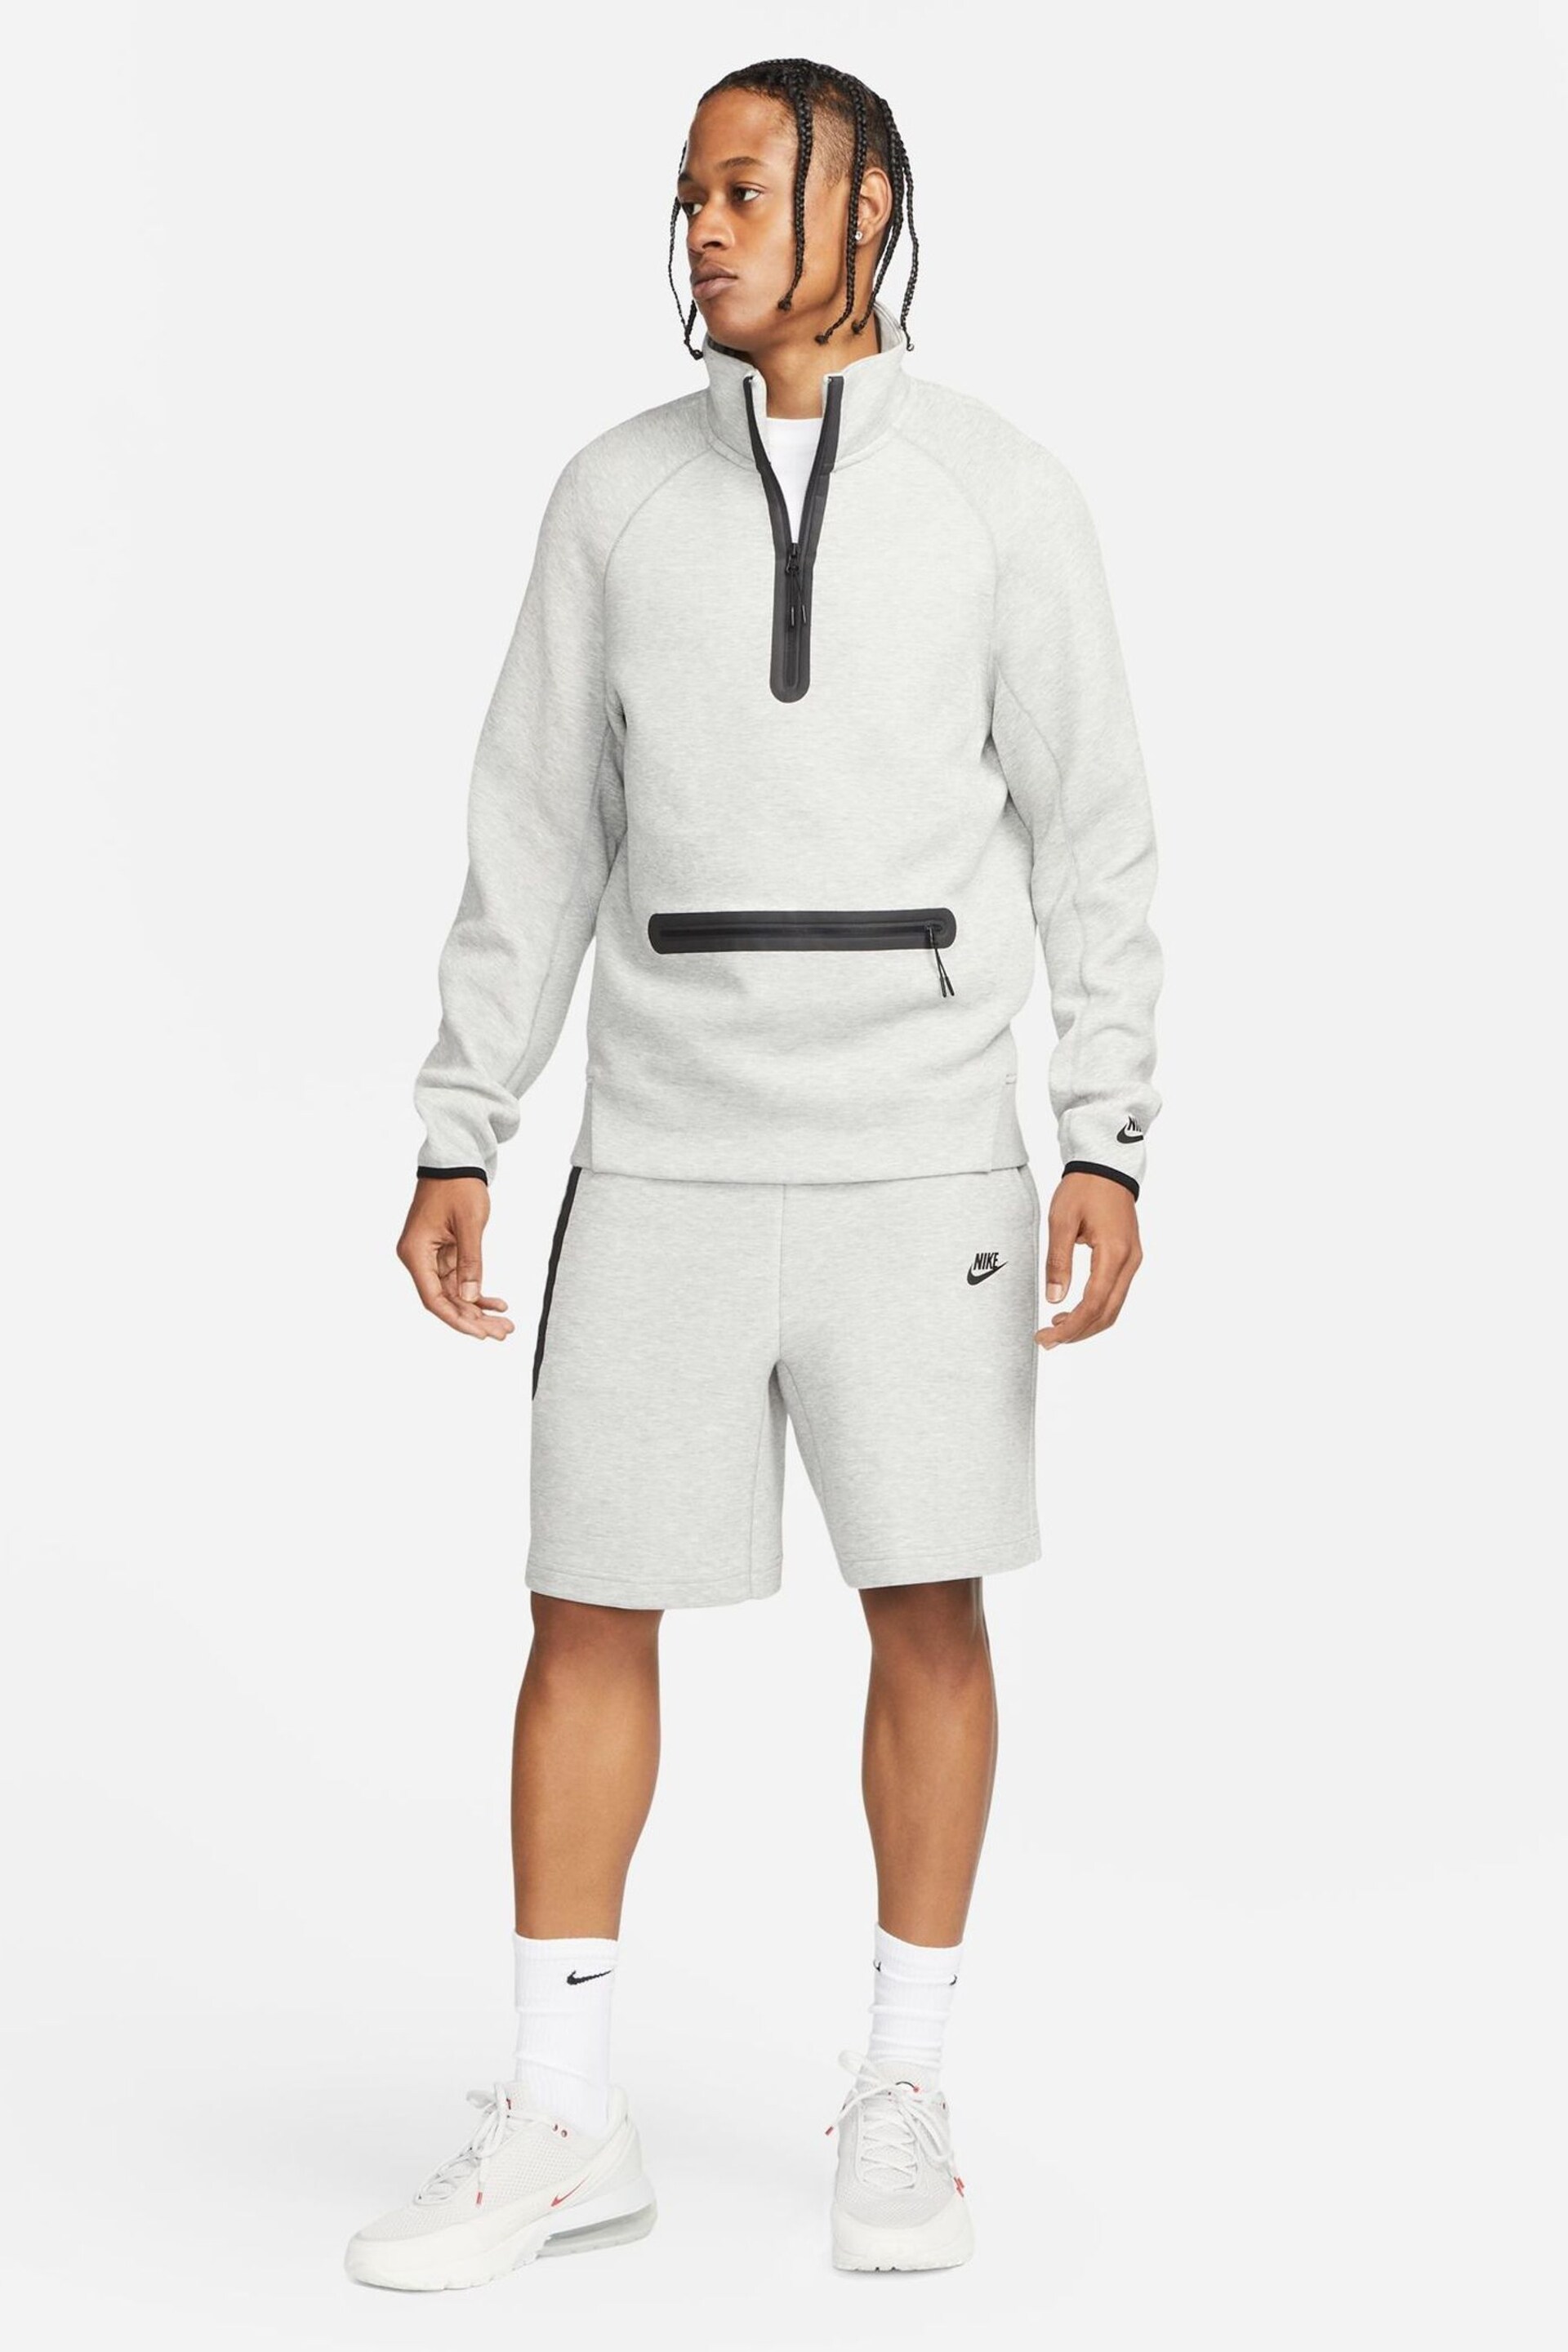 Nike Grey Tech Fleece Half Zip Sweatshirt - Image 5 of 16